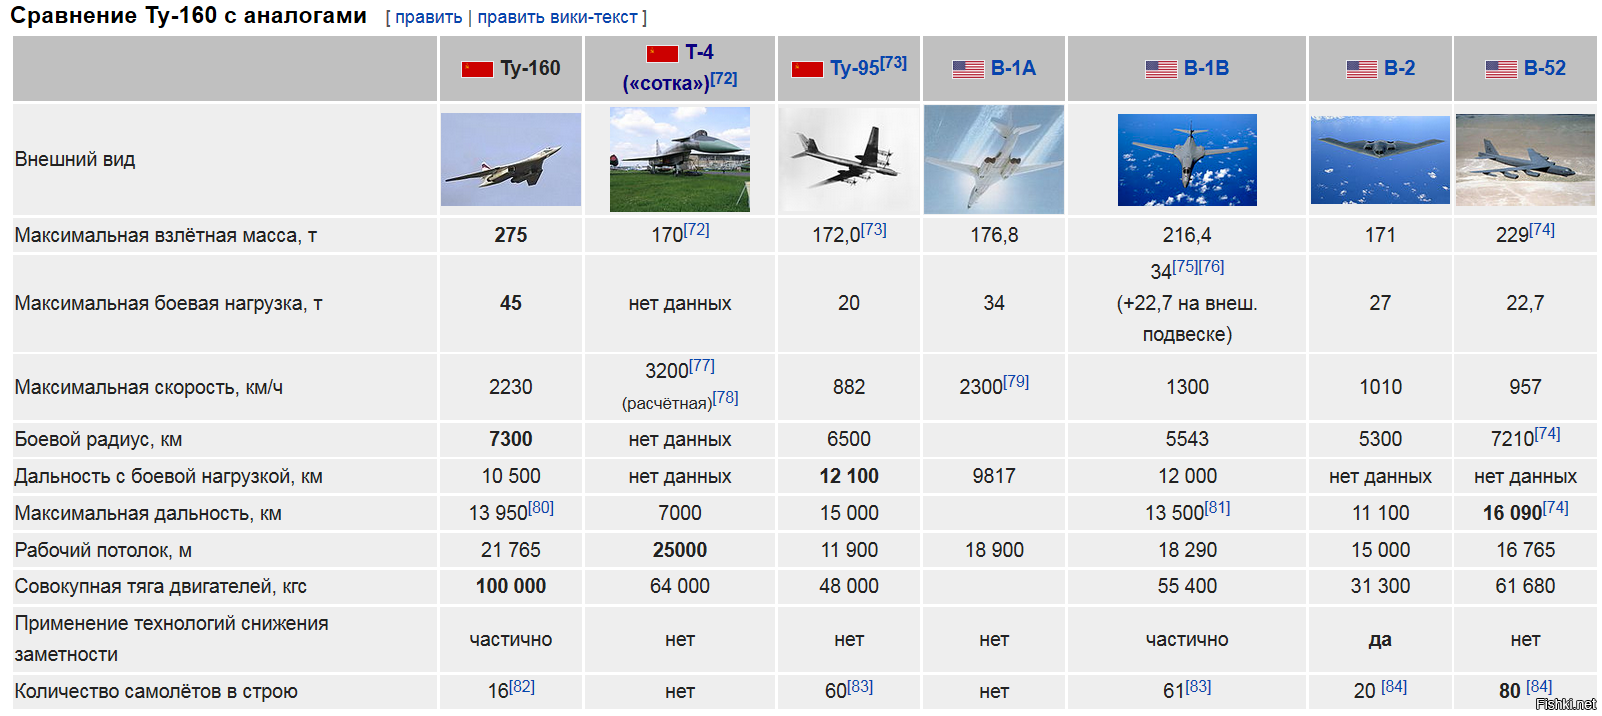 Сколько у россии самолетов ту 22. Ту 160 м ТТХ самолета. Стратегический бомбардировщик ту-160 ТТХ. Тех характеристики ту 160. Белый лебедь самолет ту 160 характеристики.